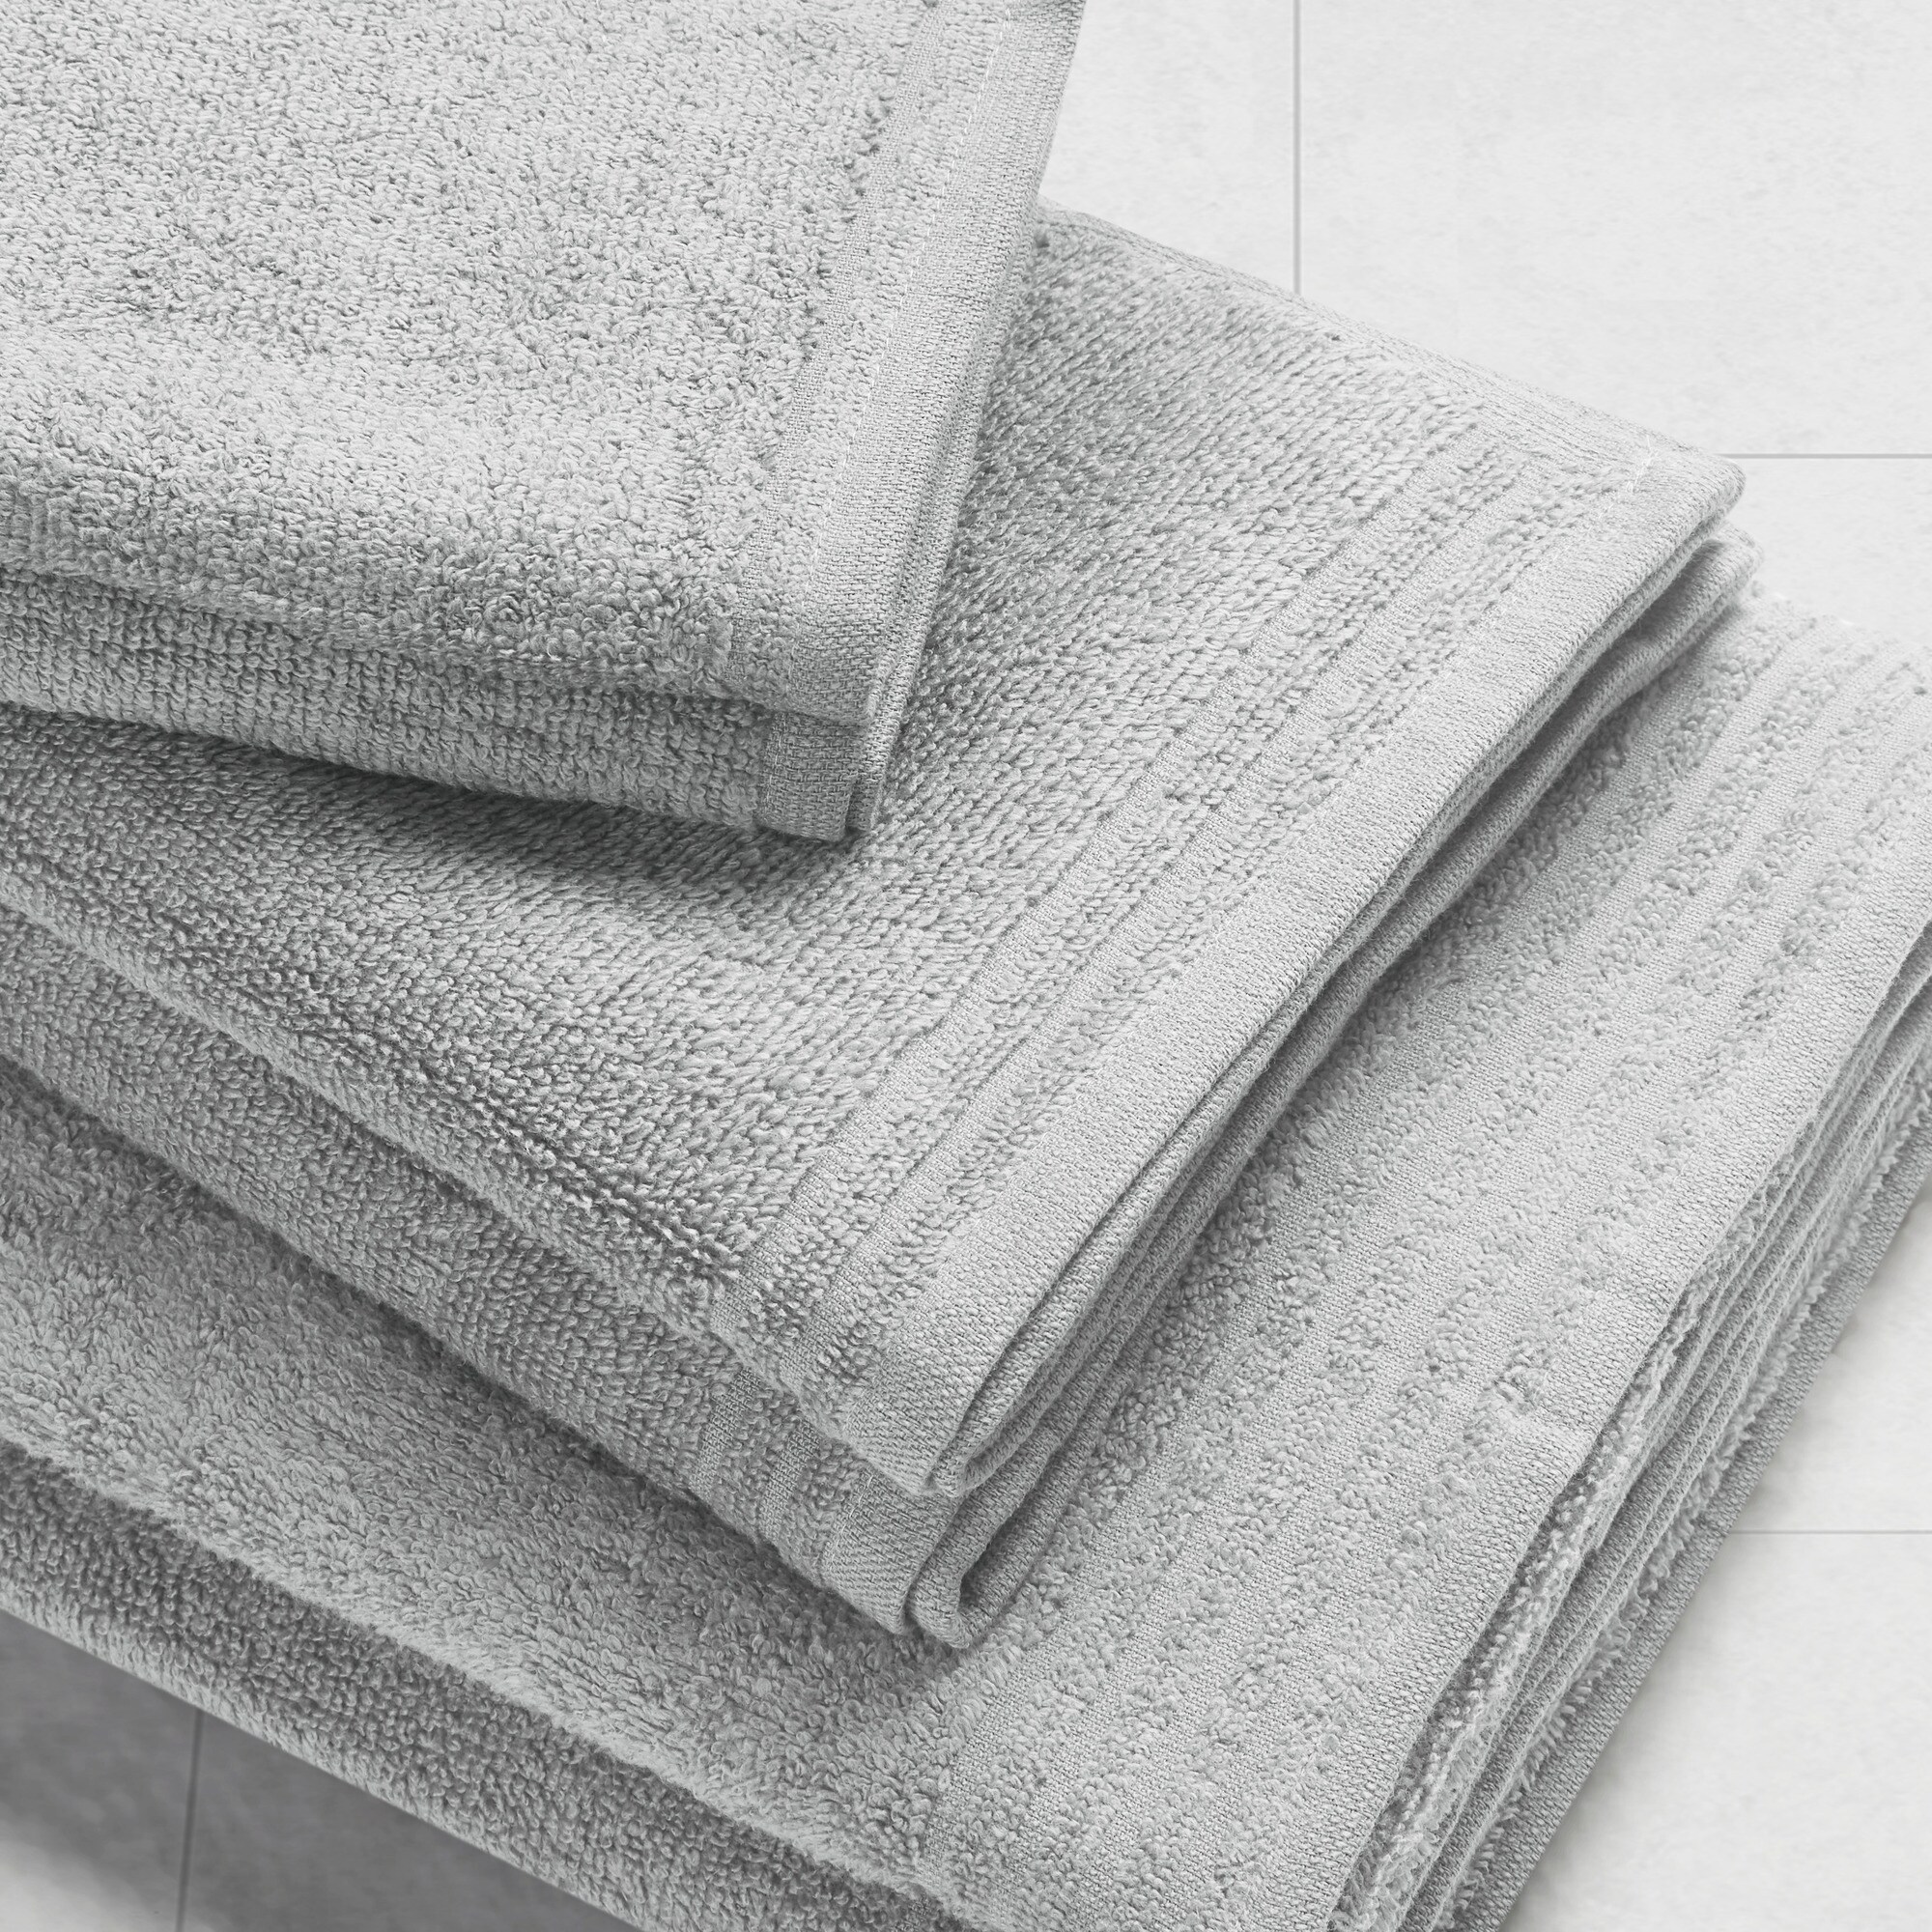 White Big Bundle 100% Cotton Quick Dry 12 Piece Bath Towel Set by 510